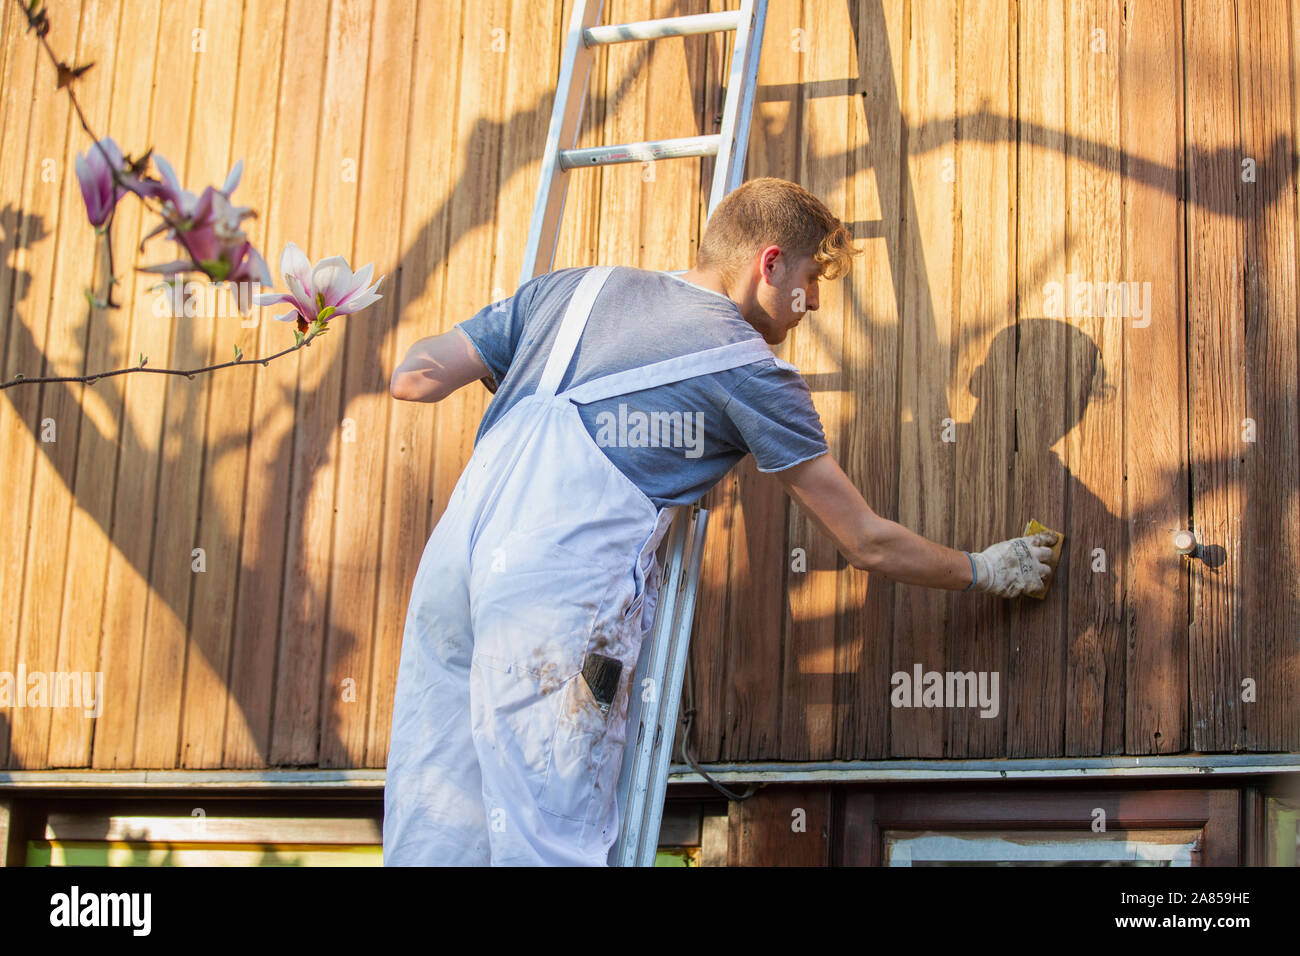 Männliche Arbeiter auf Leiter staining Wood siding auf home Exterieur Stockfoto